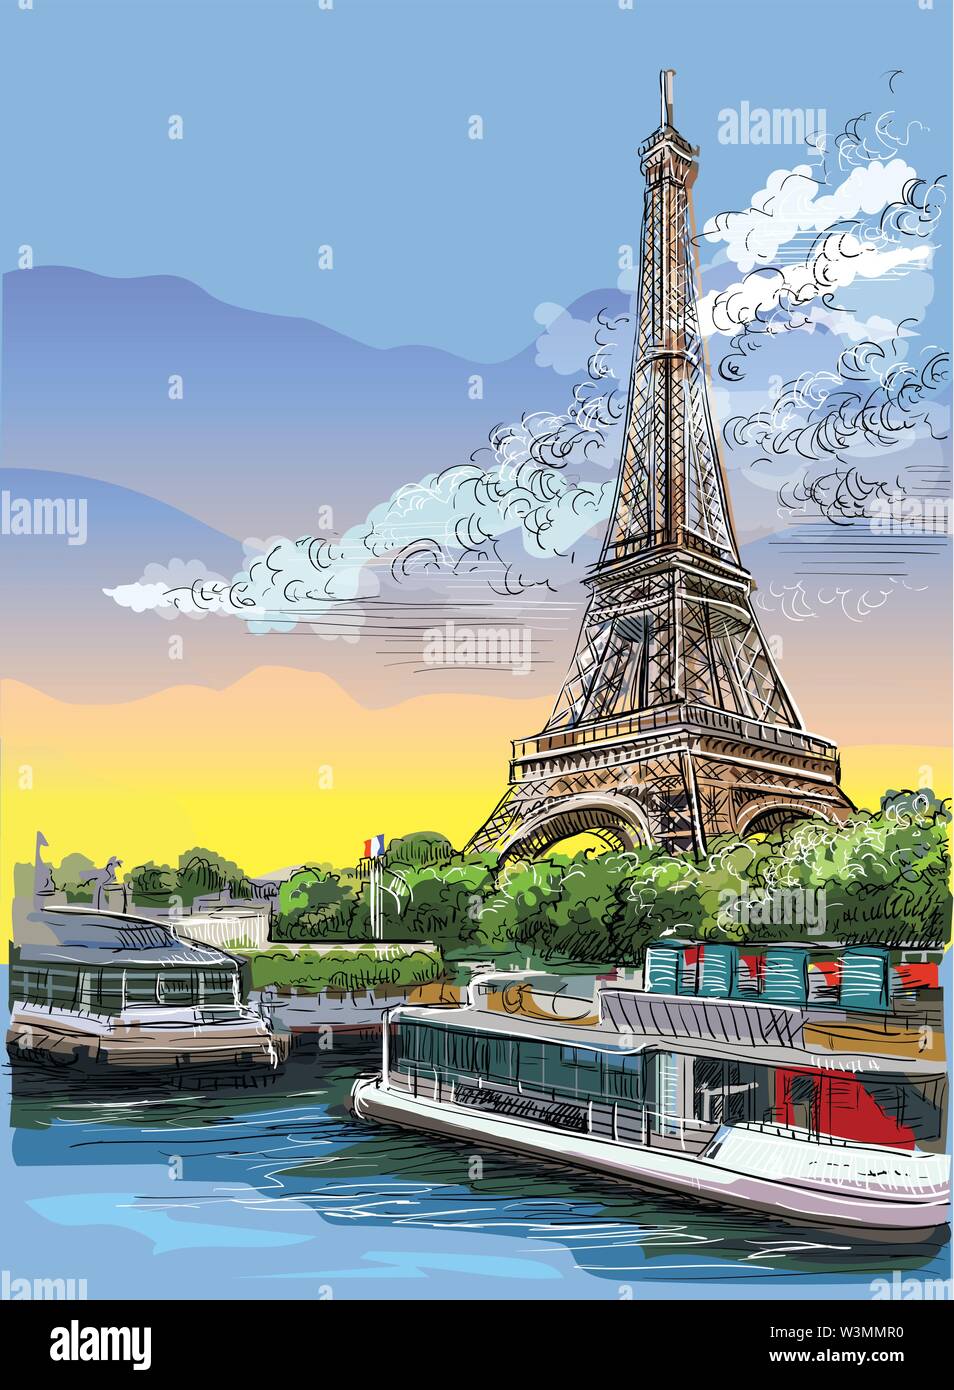 Bunte Vektor hand Zeichnung Abbildung: Eiffelturm, Wahrzeichen von Paris, Frankreich. Stadtbild mit dem Eiffelturm, mit Blick auf Seine River Embankment. Col Stock Vektor